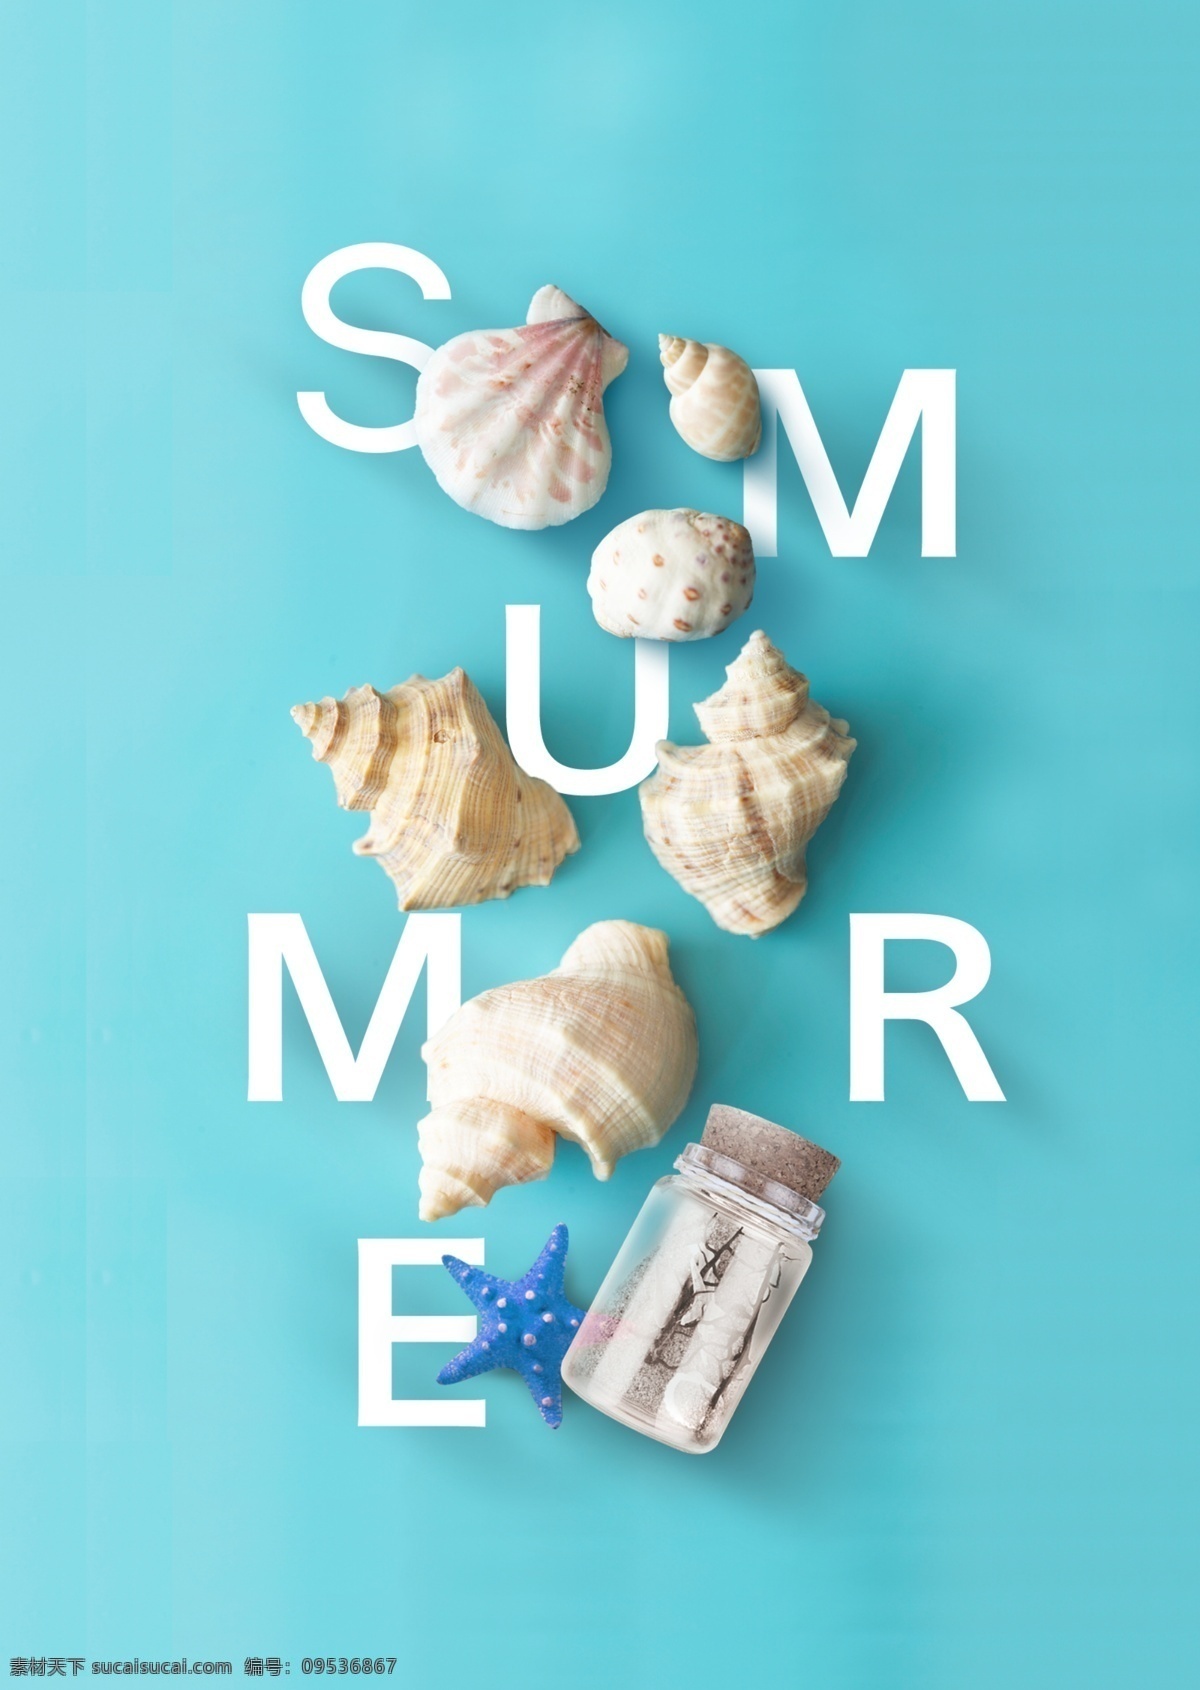 夏季 蓝色 小 清新 海报 小清新 贝壳 海星 summer 飘流瓶 海螺